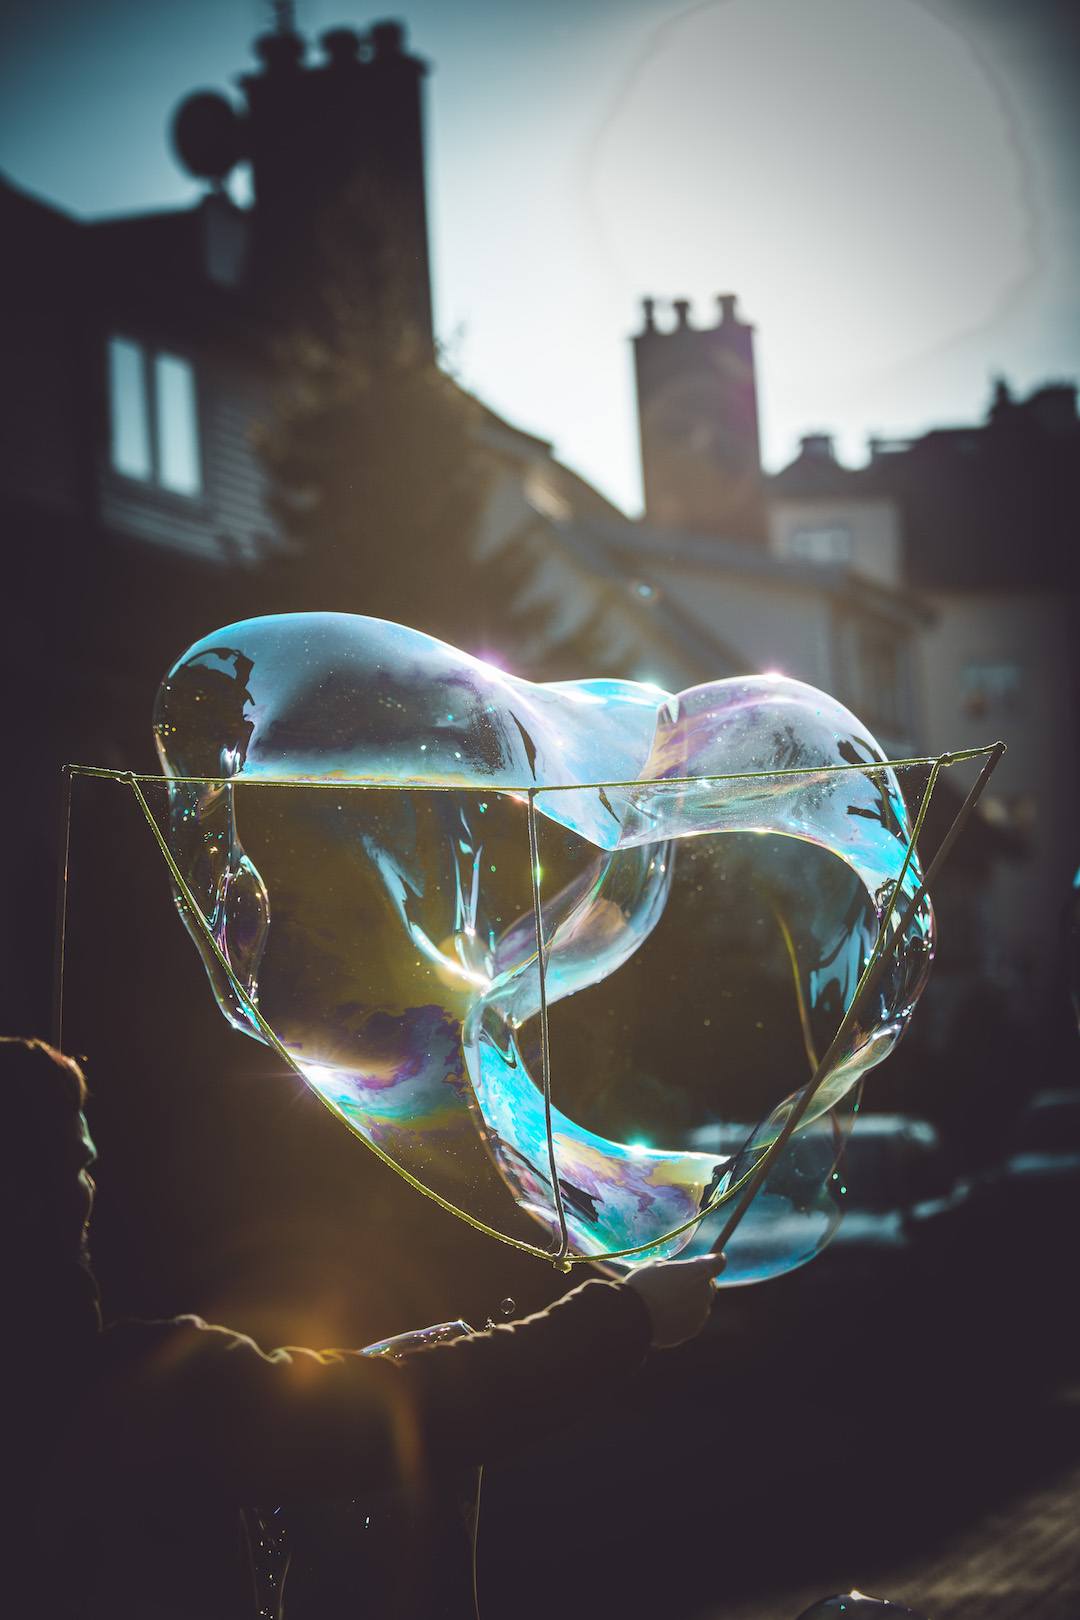 Antek macht Bubbles mit dem Alon auf der Straße